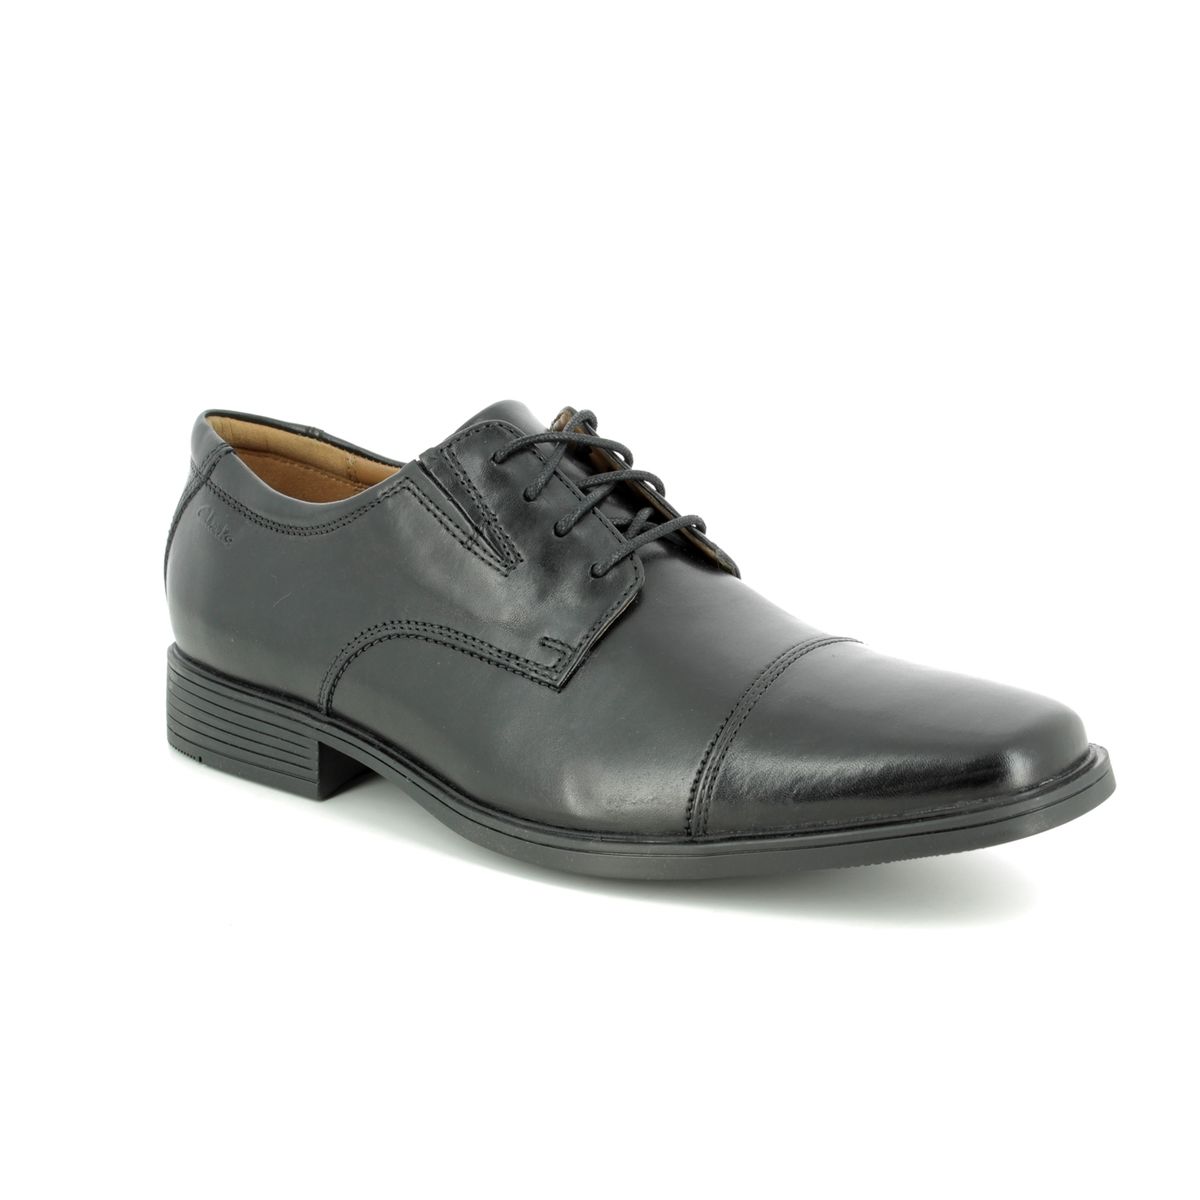 Clarks Tilden Cap Black leather Mens formal shoes 1030-98H